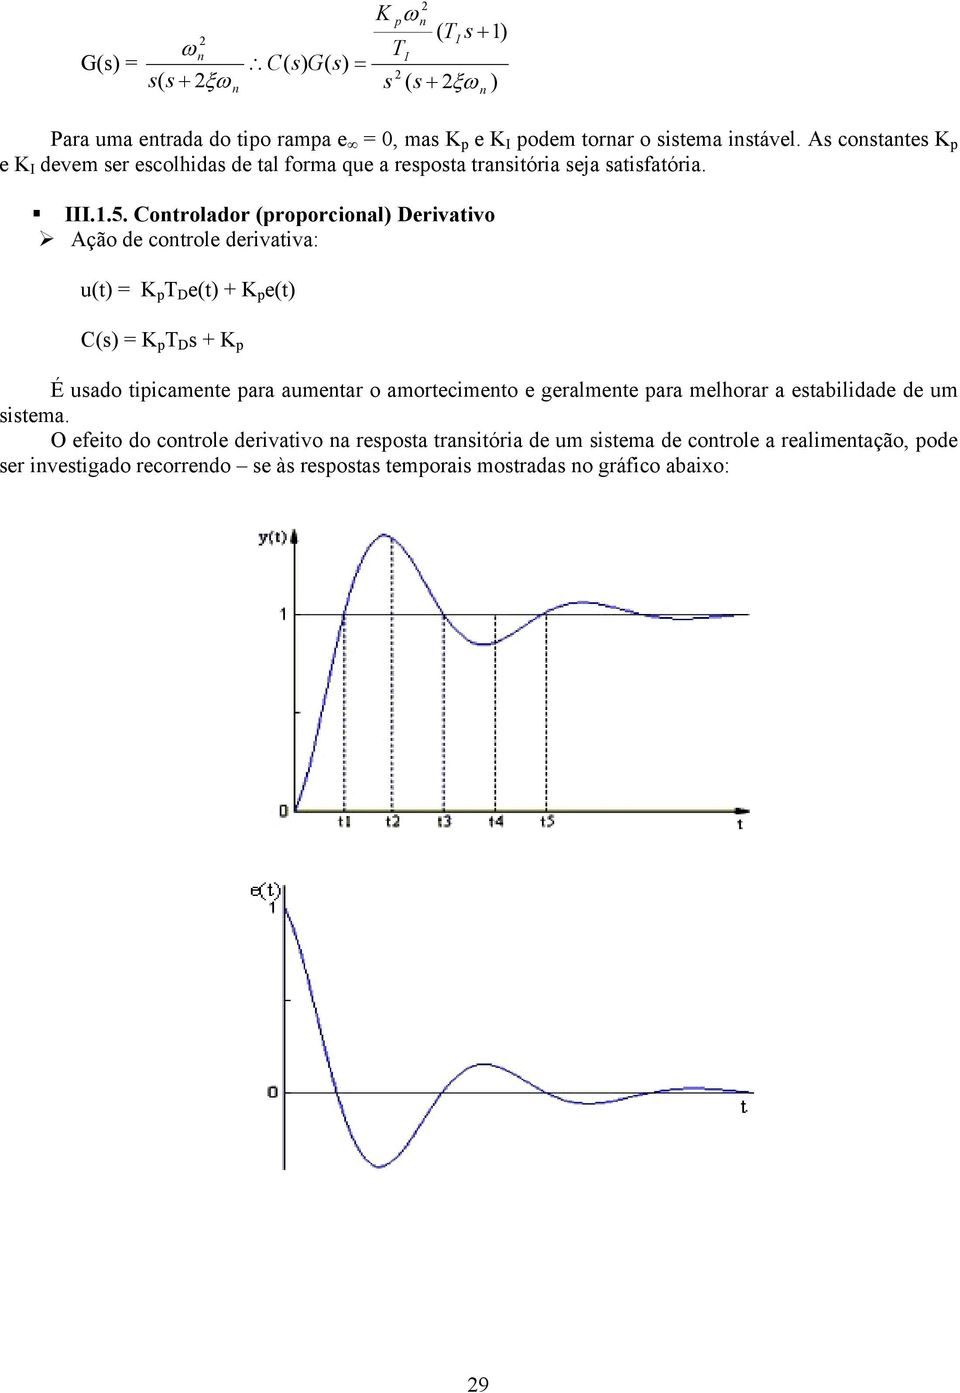 Cotrolador (roorcioal) Derivativo Ação de cotrole derivativa: u( = D e( + e( C() = D + É uado tiicamete ara aumetar o amortecimeto e